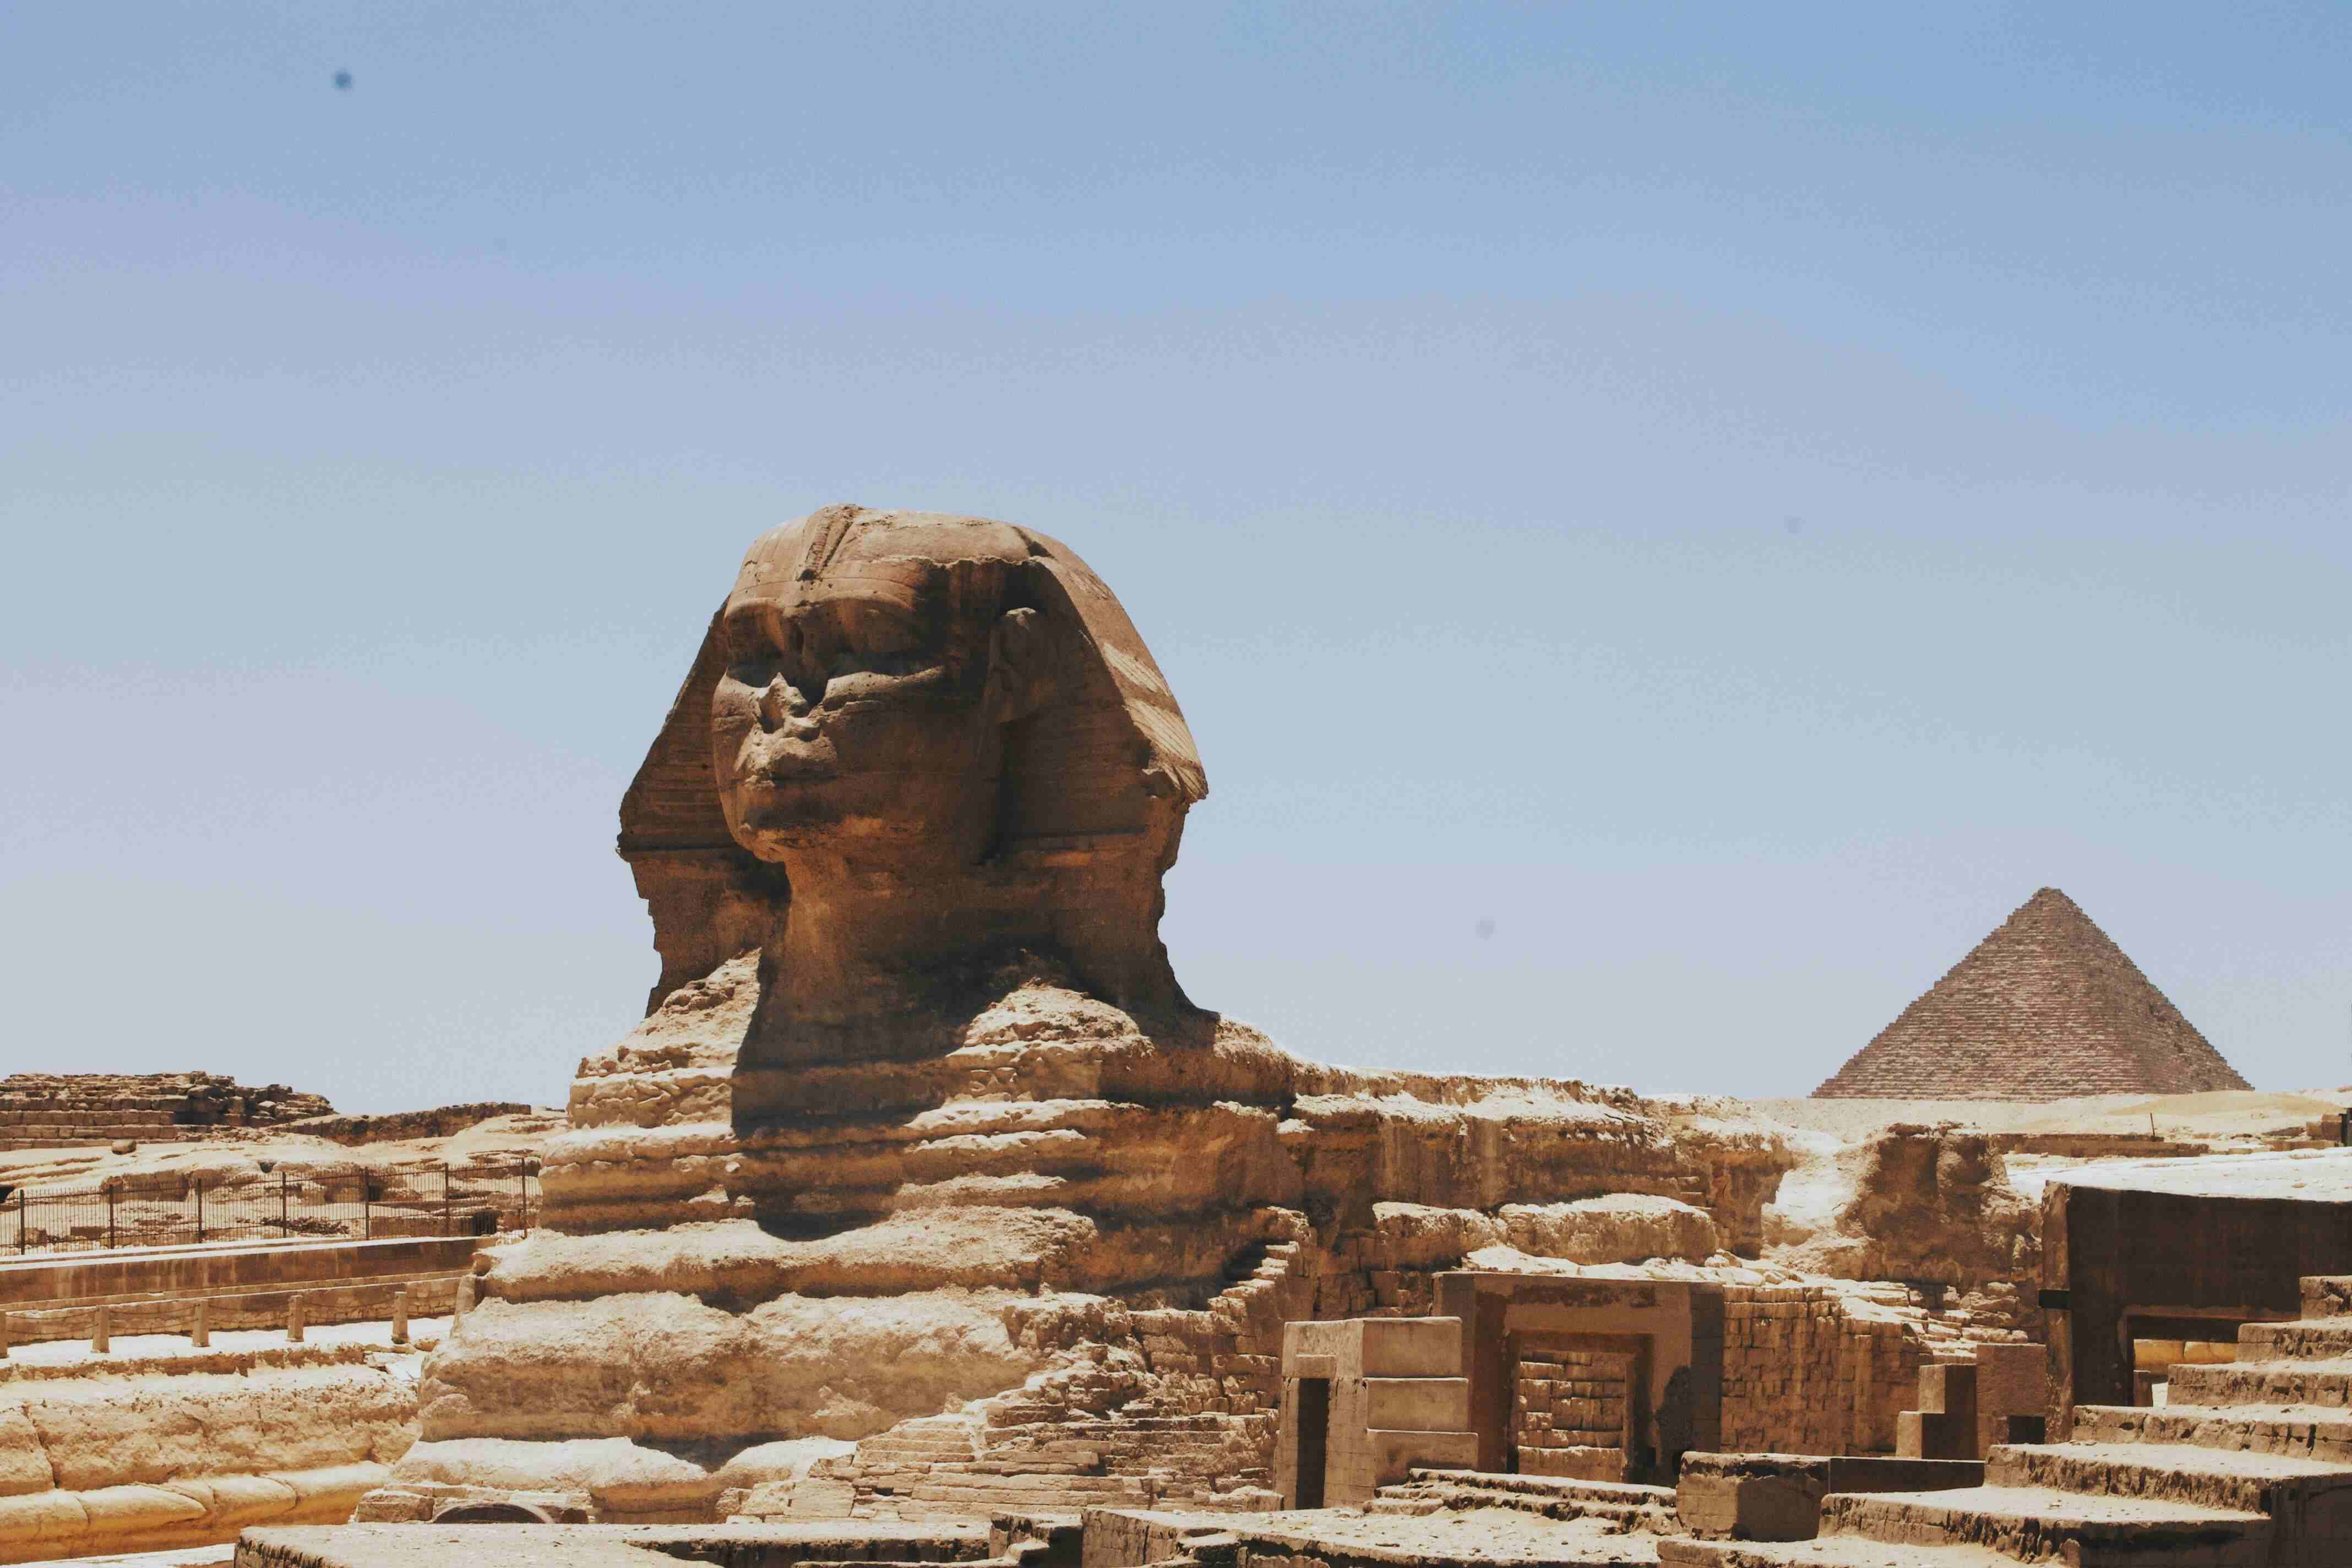 Las Pirámides de Guiza la esfinge y los templos del Nilo